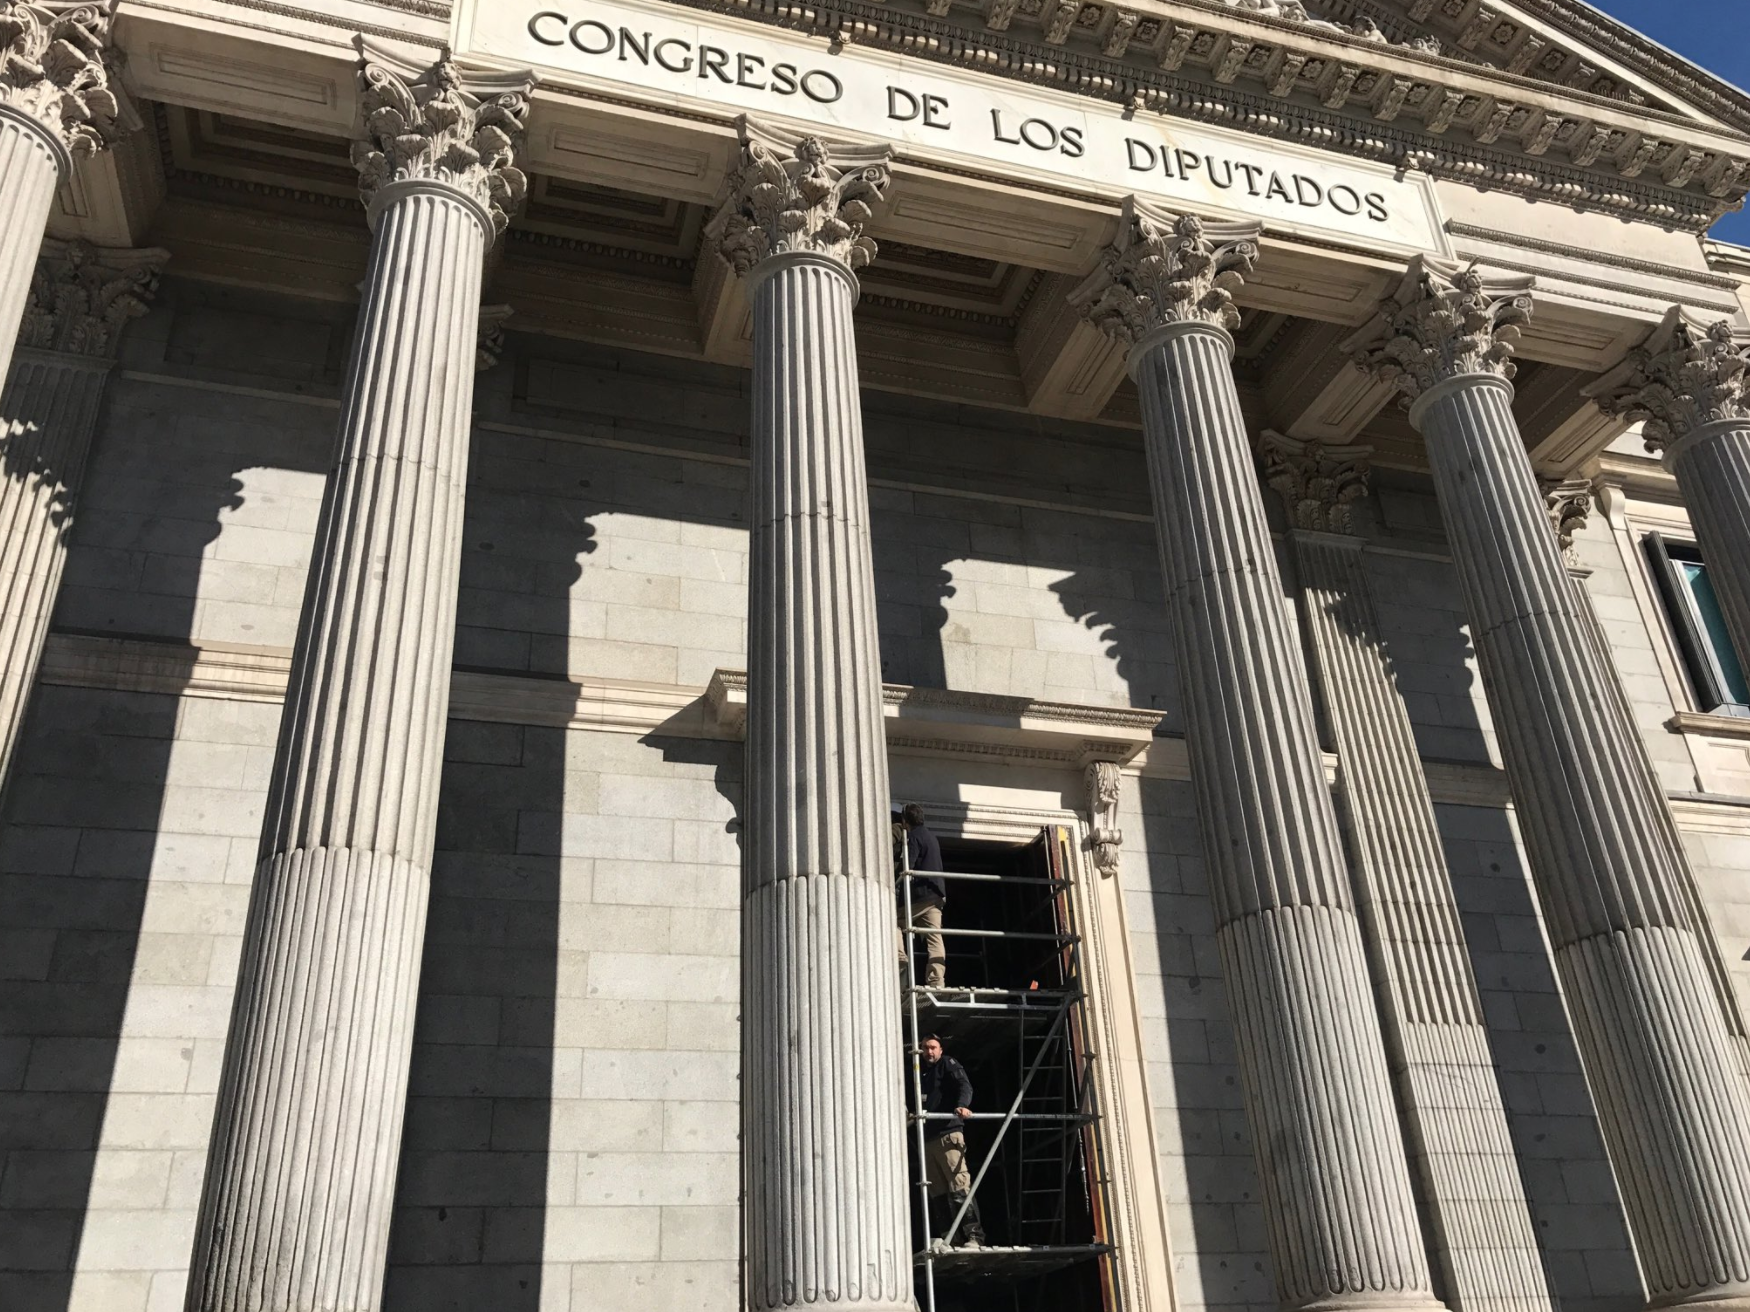 Les obres a la façana del Congrés